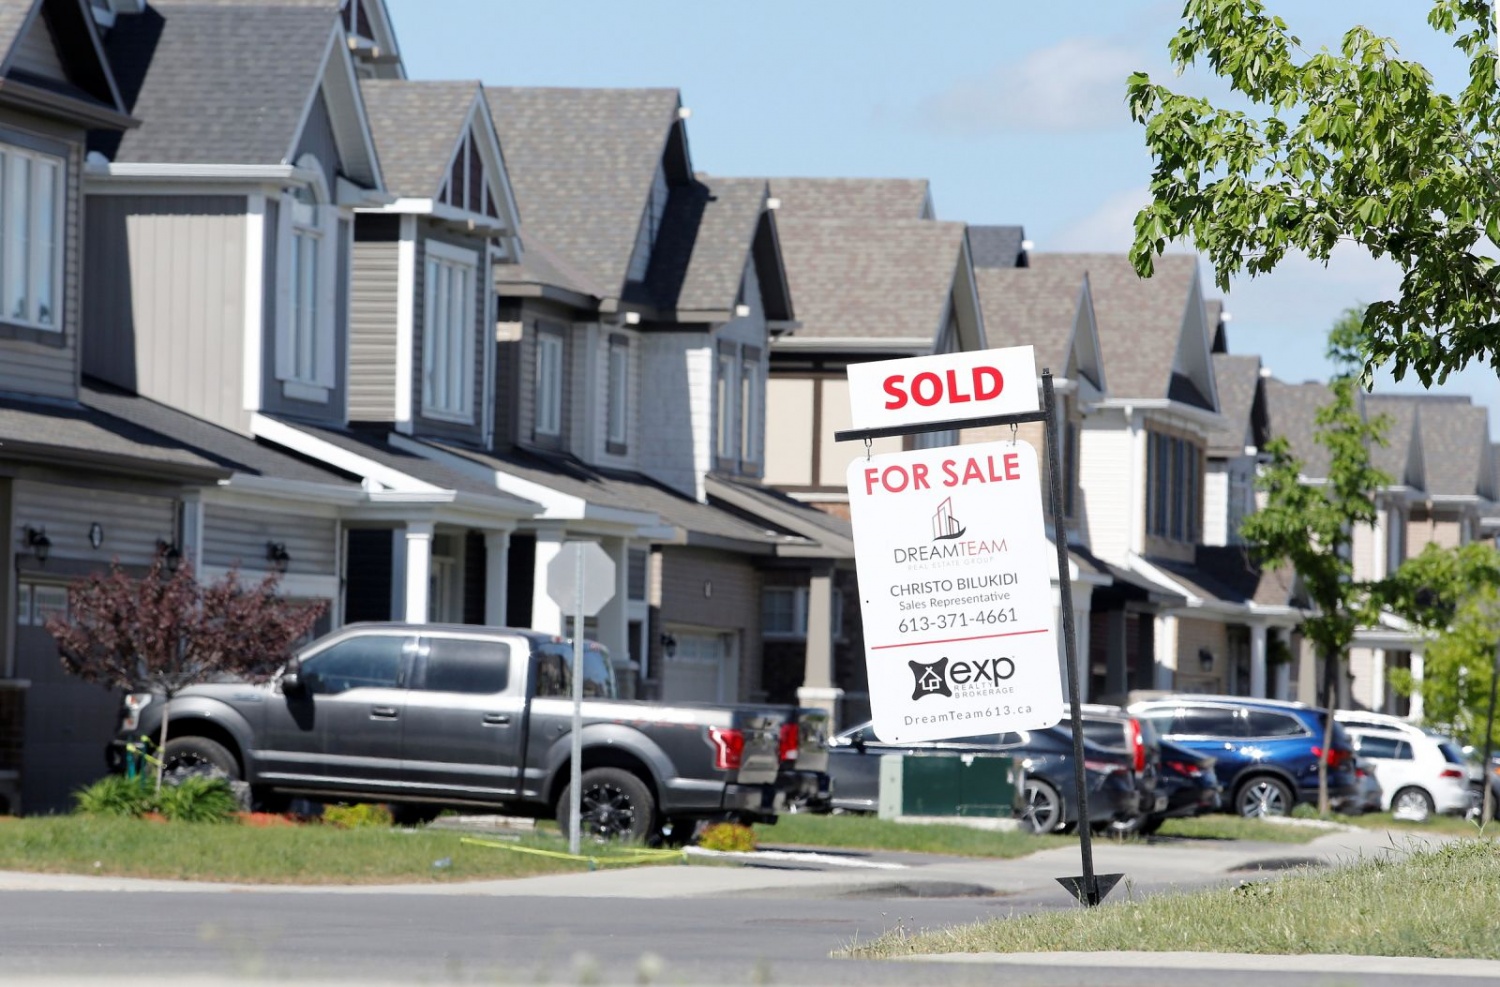 Canada cũng thử nghiệm chính sách ưu tiên quyền mua cho các tòa nhà có giá cho thuê thấp.